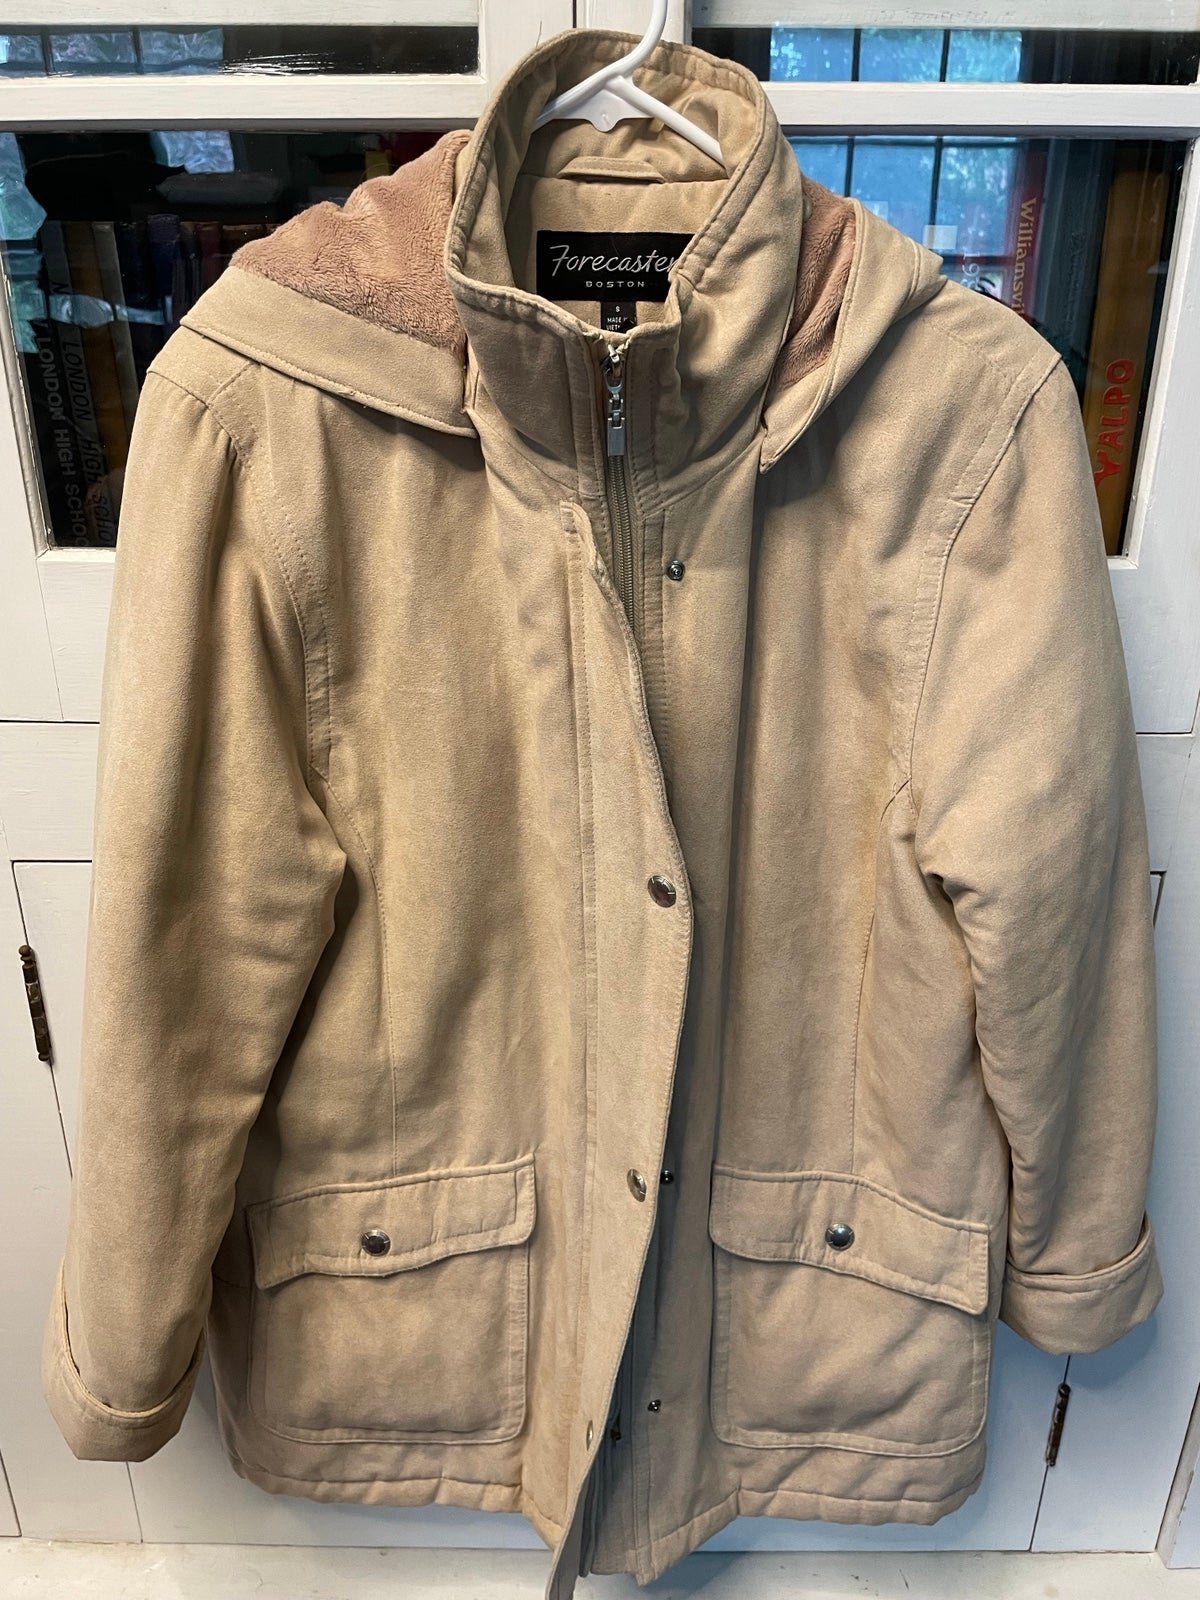 Vintage Forecaster Of Boston Women’s Beige Coat Jacket W/ Fox Fur Lining Size S DeMN899QE